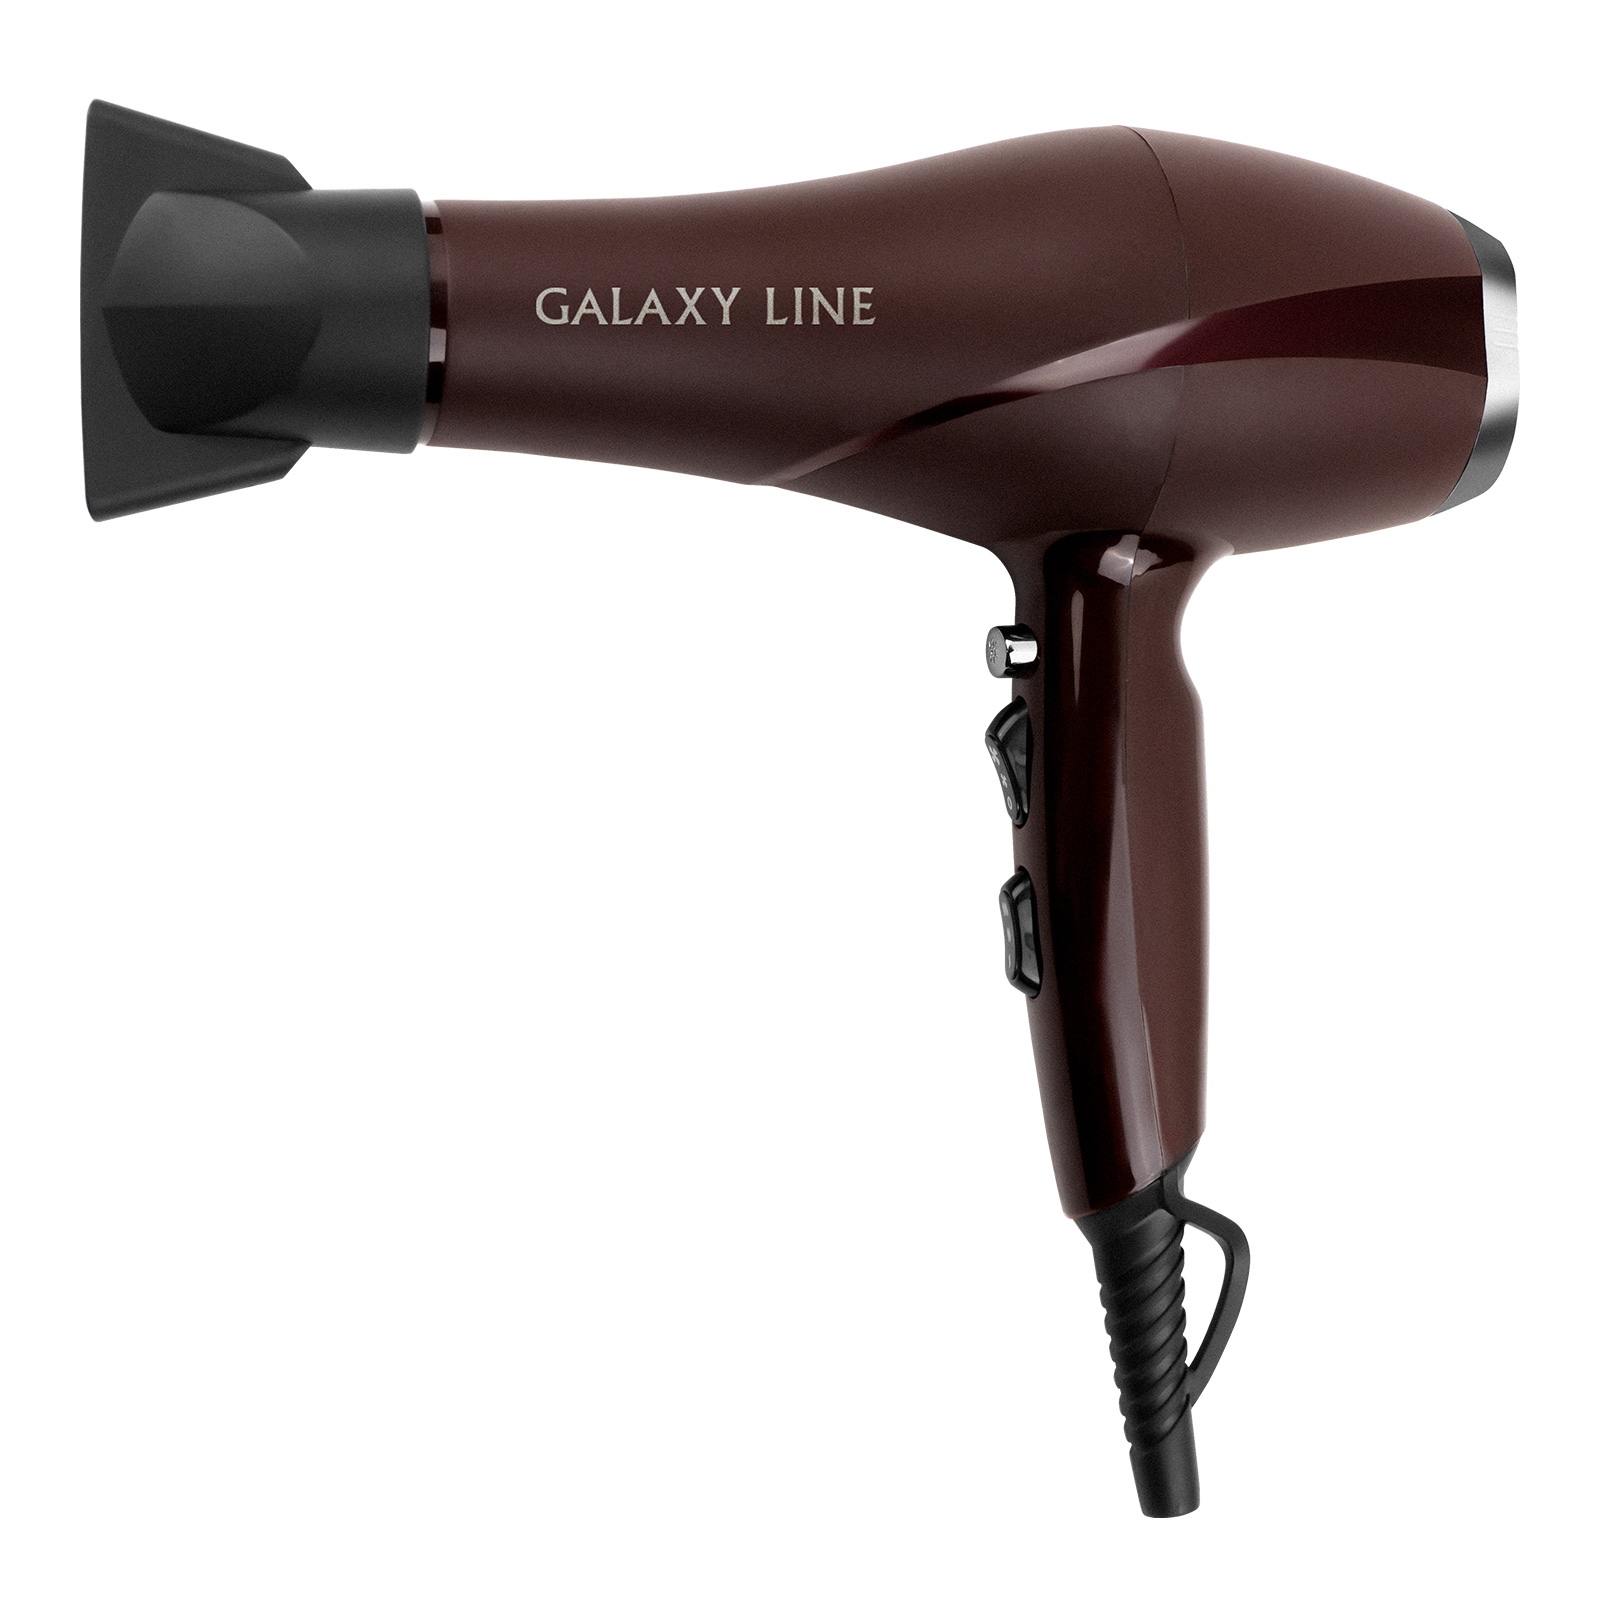 Фен для волос GALAXY LINE GL 4347 - фото 1